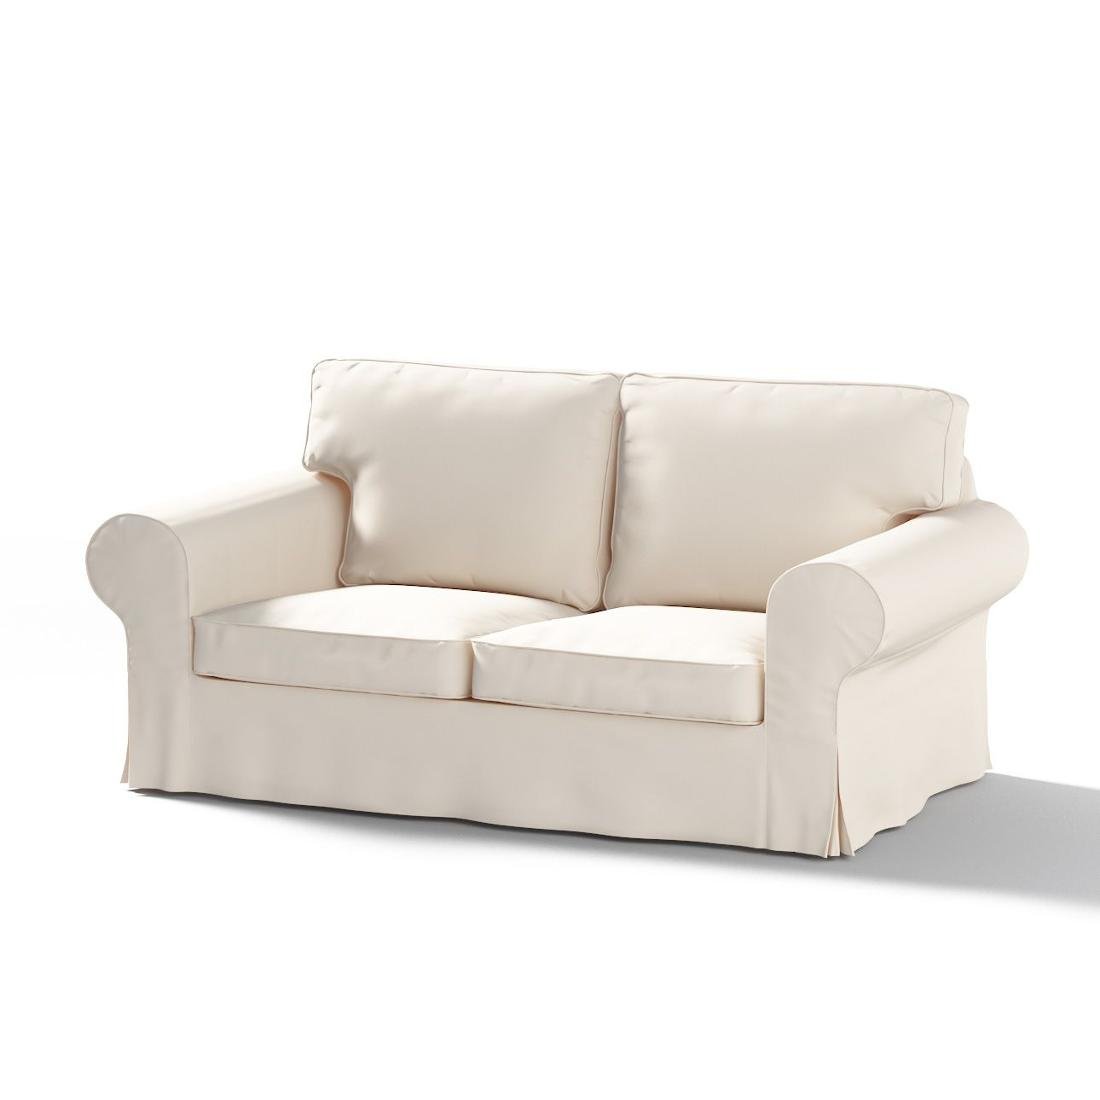 Dekoria Pokrowiec na sofę Ektorp 2-osobową rozkładaną model po 2012 kremowa biel 200 x 90 x 73 cm Etna 1016-705-01